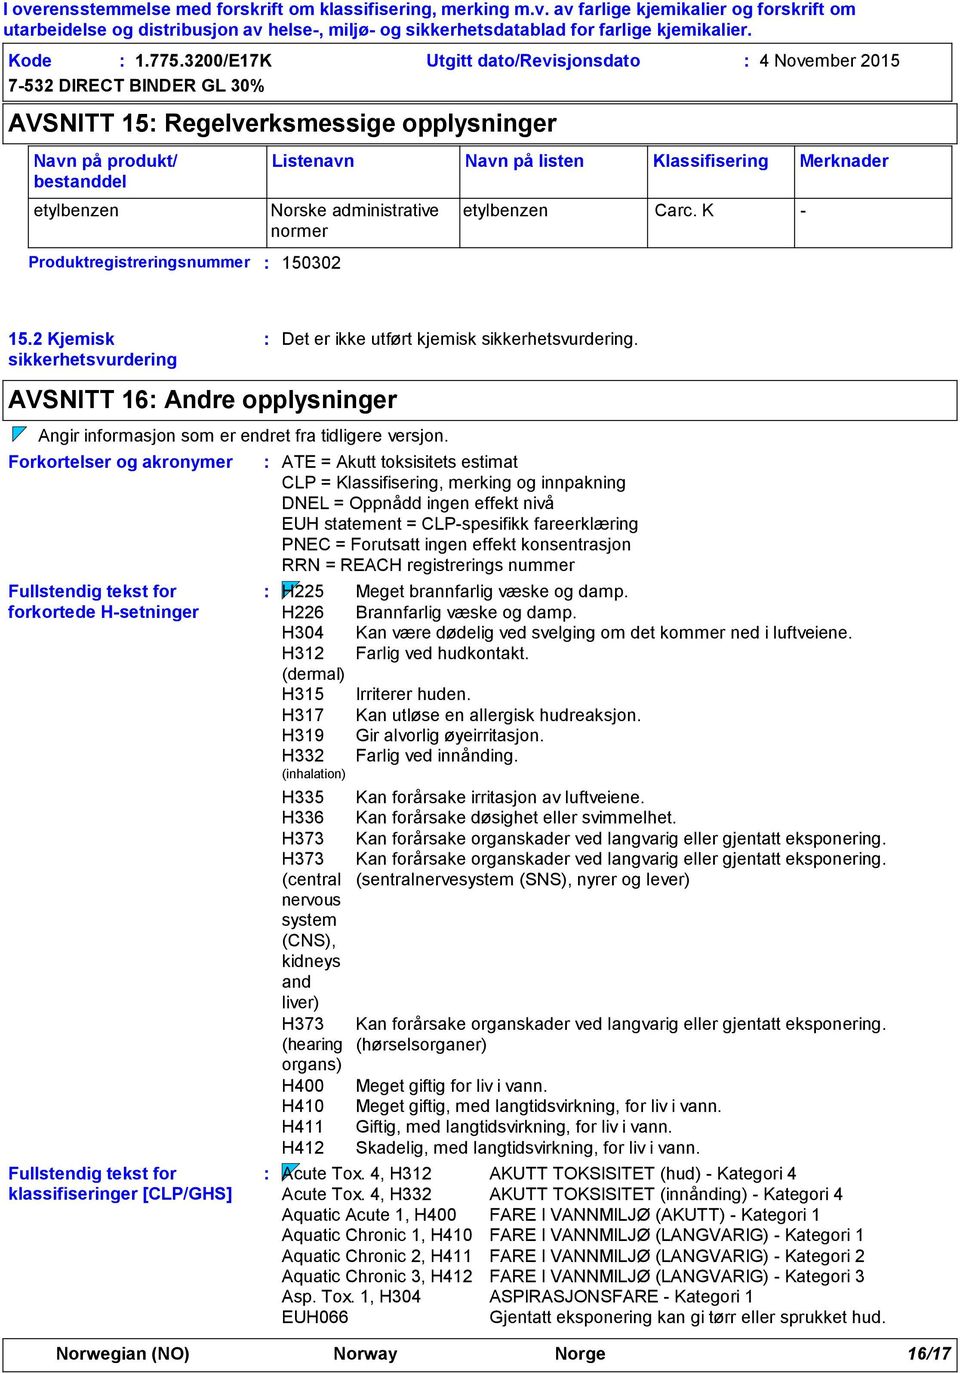 Klassifisering Merknader Norske administrative normer etylbenzen Carc. K - 15.2 Kjemisk sikkerhetsvurdering Det er ikke utført kjemisk sikkerhetsvurdering.